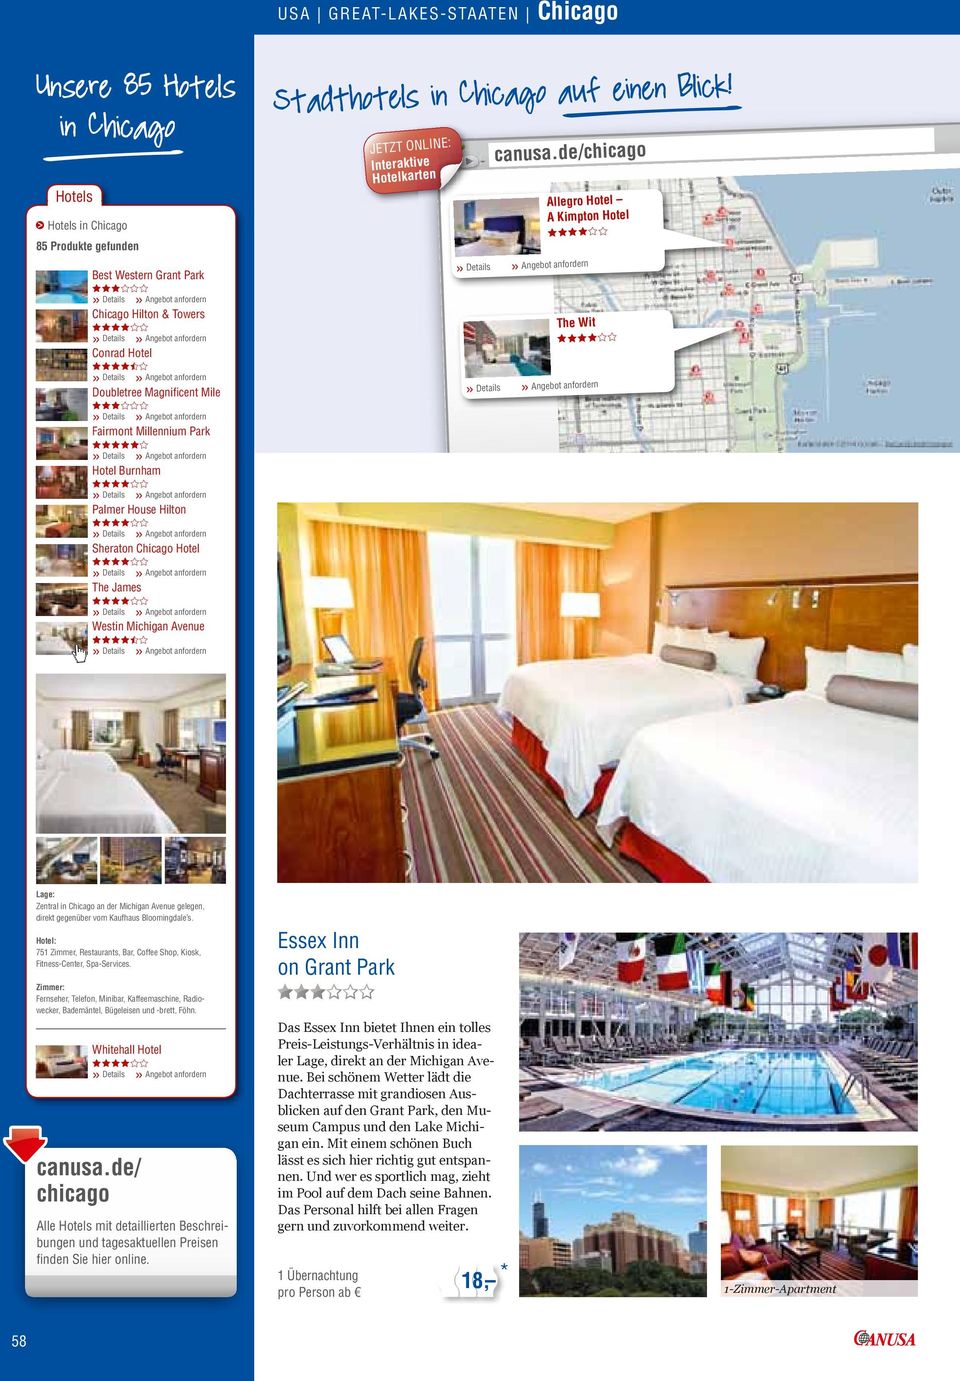 Chicago auf einen Blick! JETZT ONLINE: Interaktive Hotelkarten» Details» canusa.